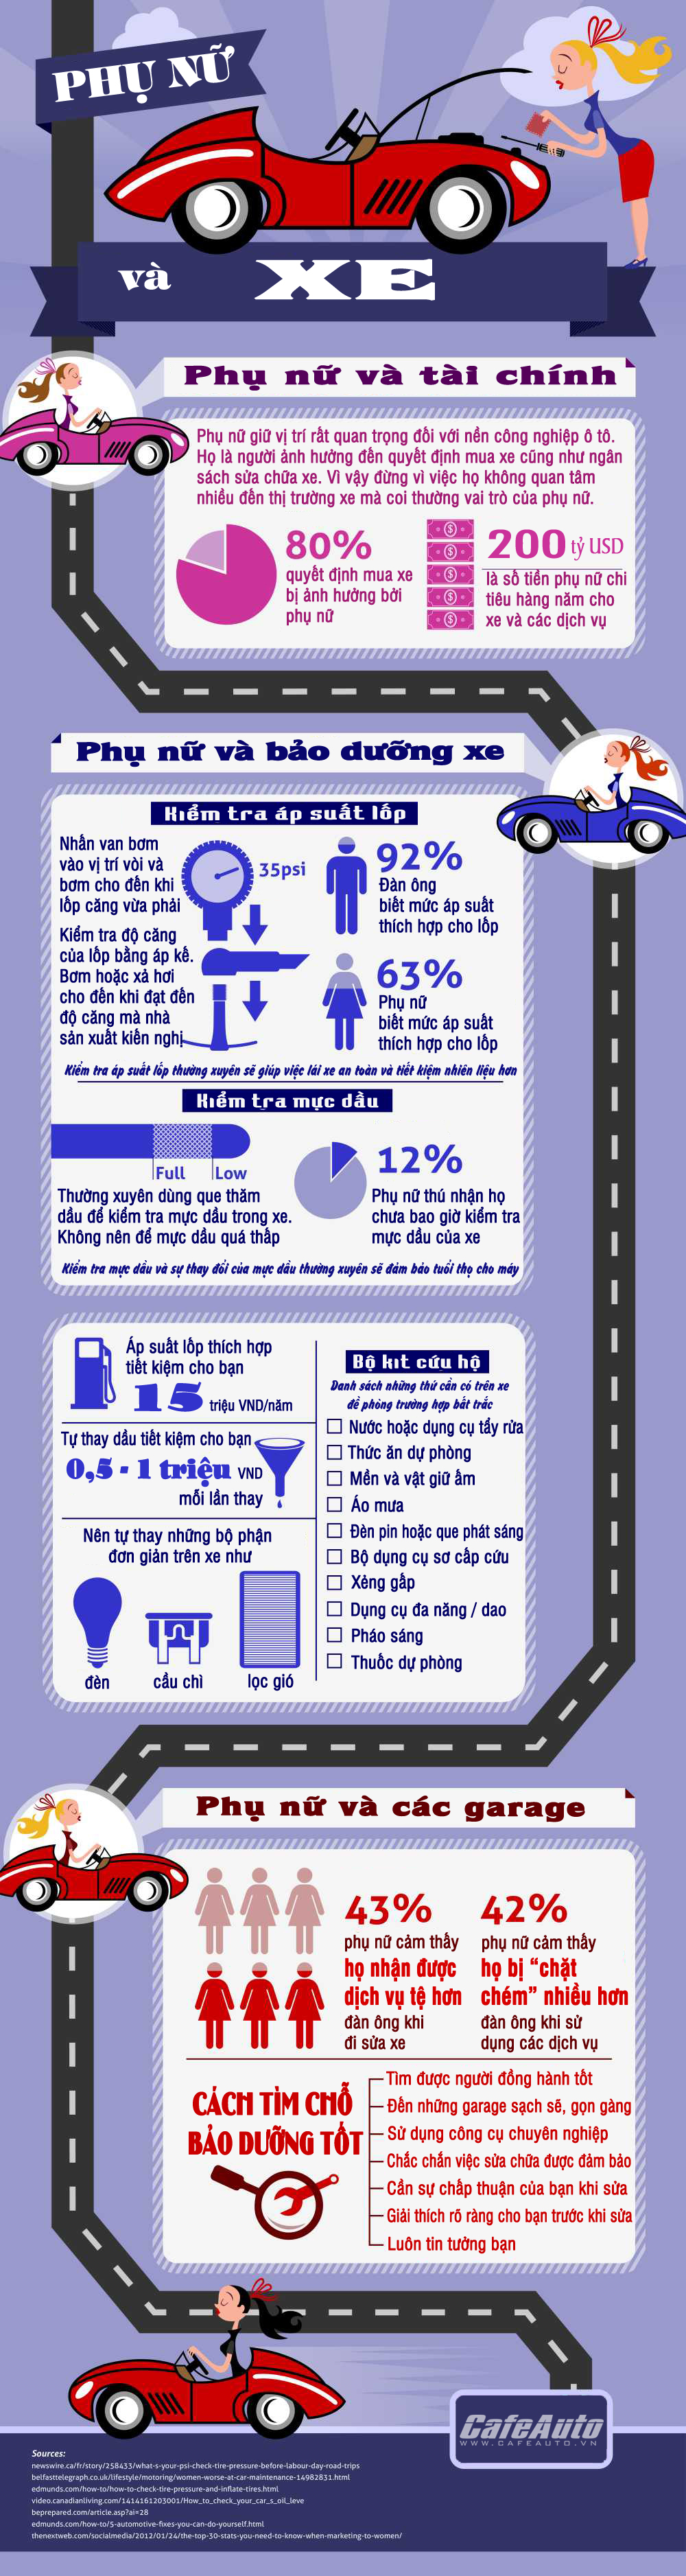 Infographic - Phụ nữ và xe